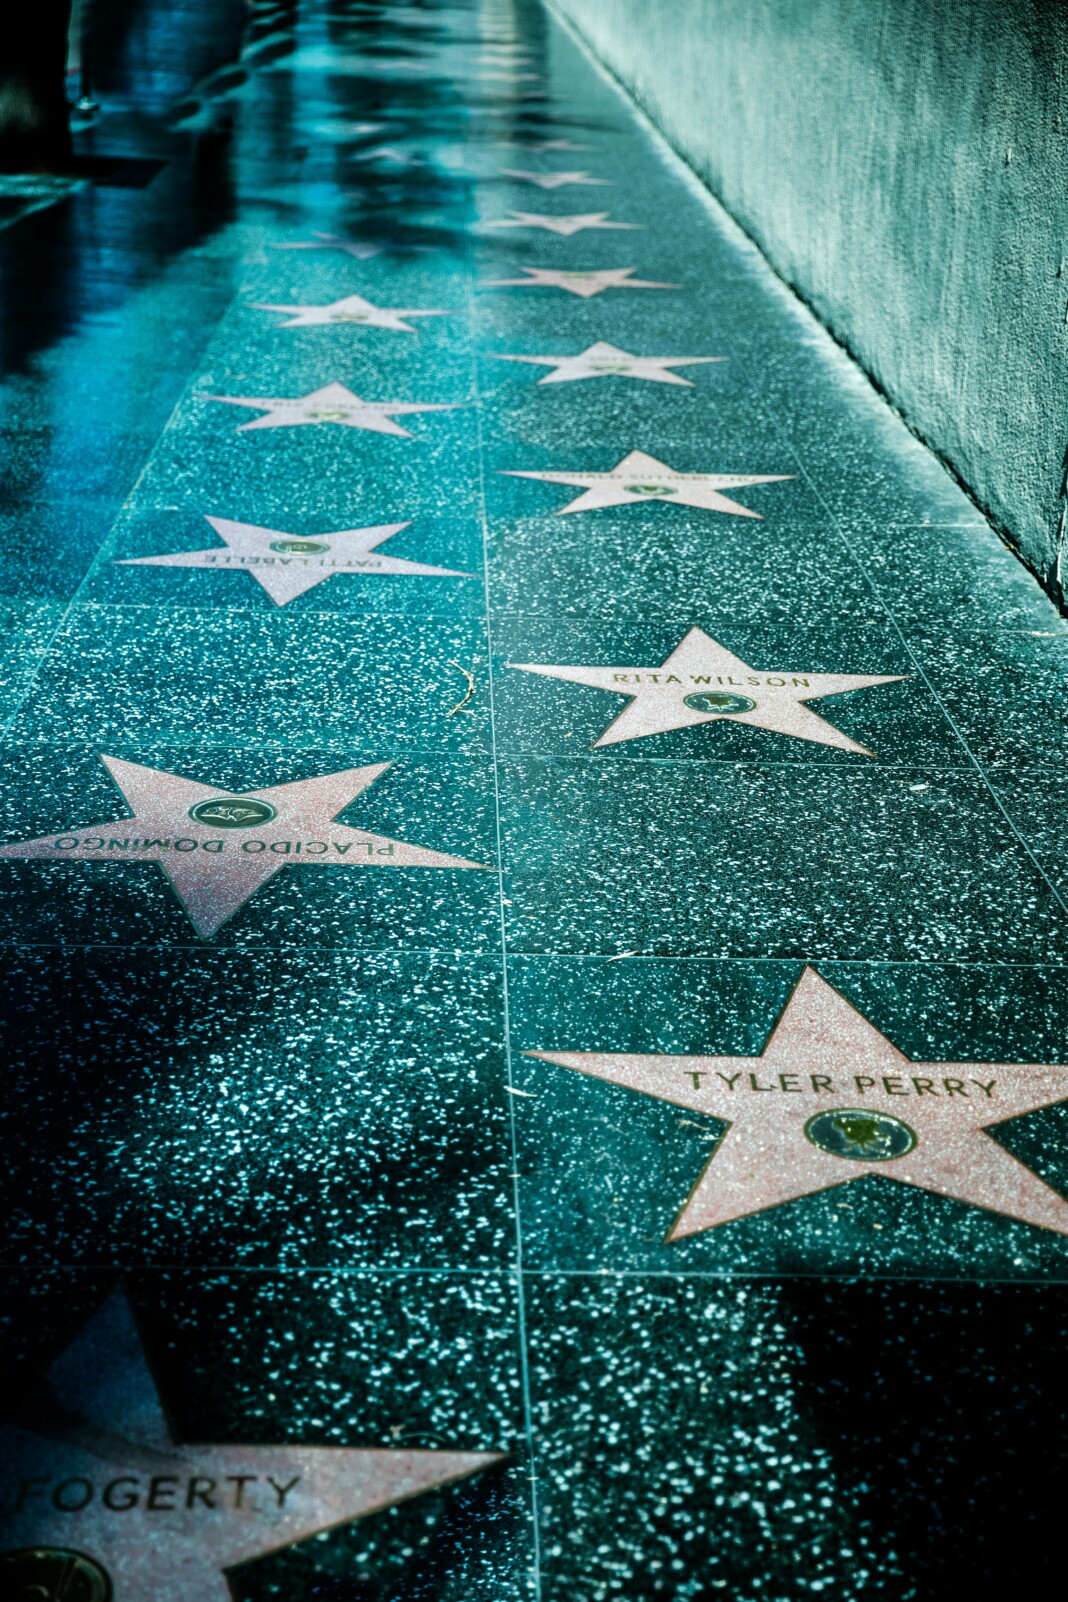 Tronçon du trottoir montrant des étoiles gravées avec les noms de diverses célébrités.